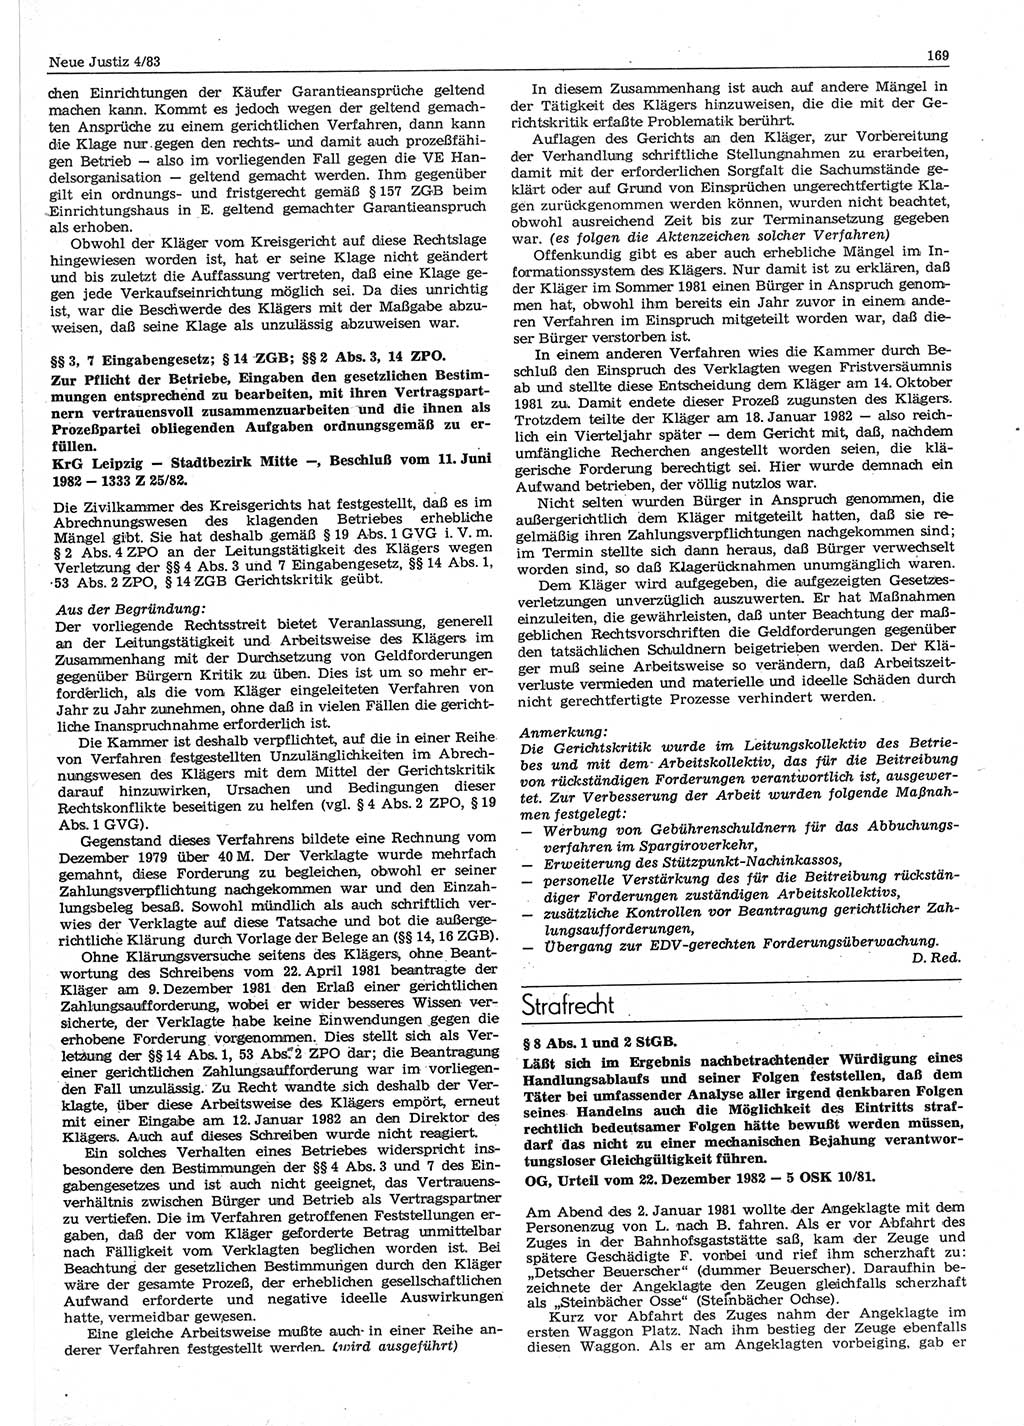 Neue Justiz (NJ), Zeitschrift für sozialistisches Recht und Gesetzlichkeit [Deutsche Demokratische Republik (DDR)], 37. Jahrgang 1983, Seite 169 (NJ DDR 1983, S. 169)